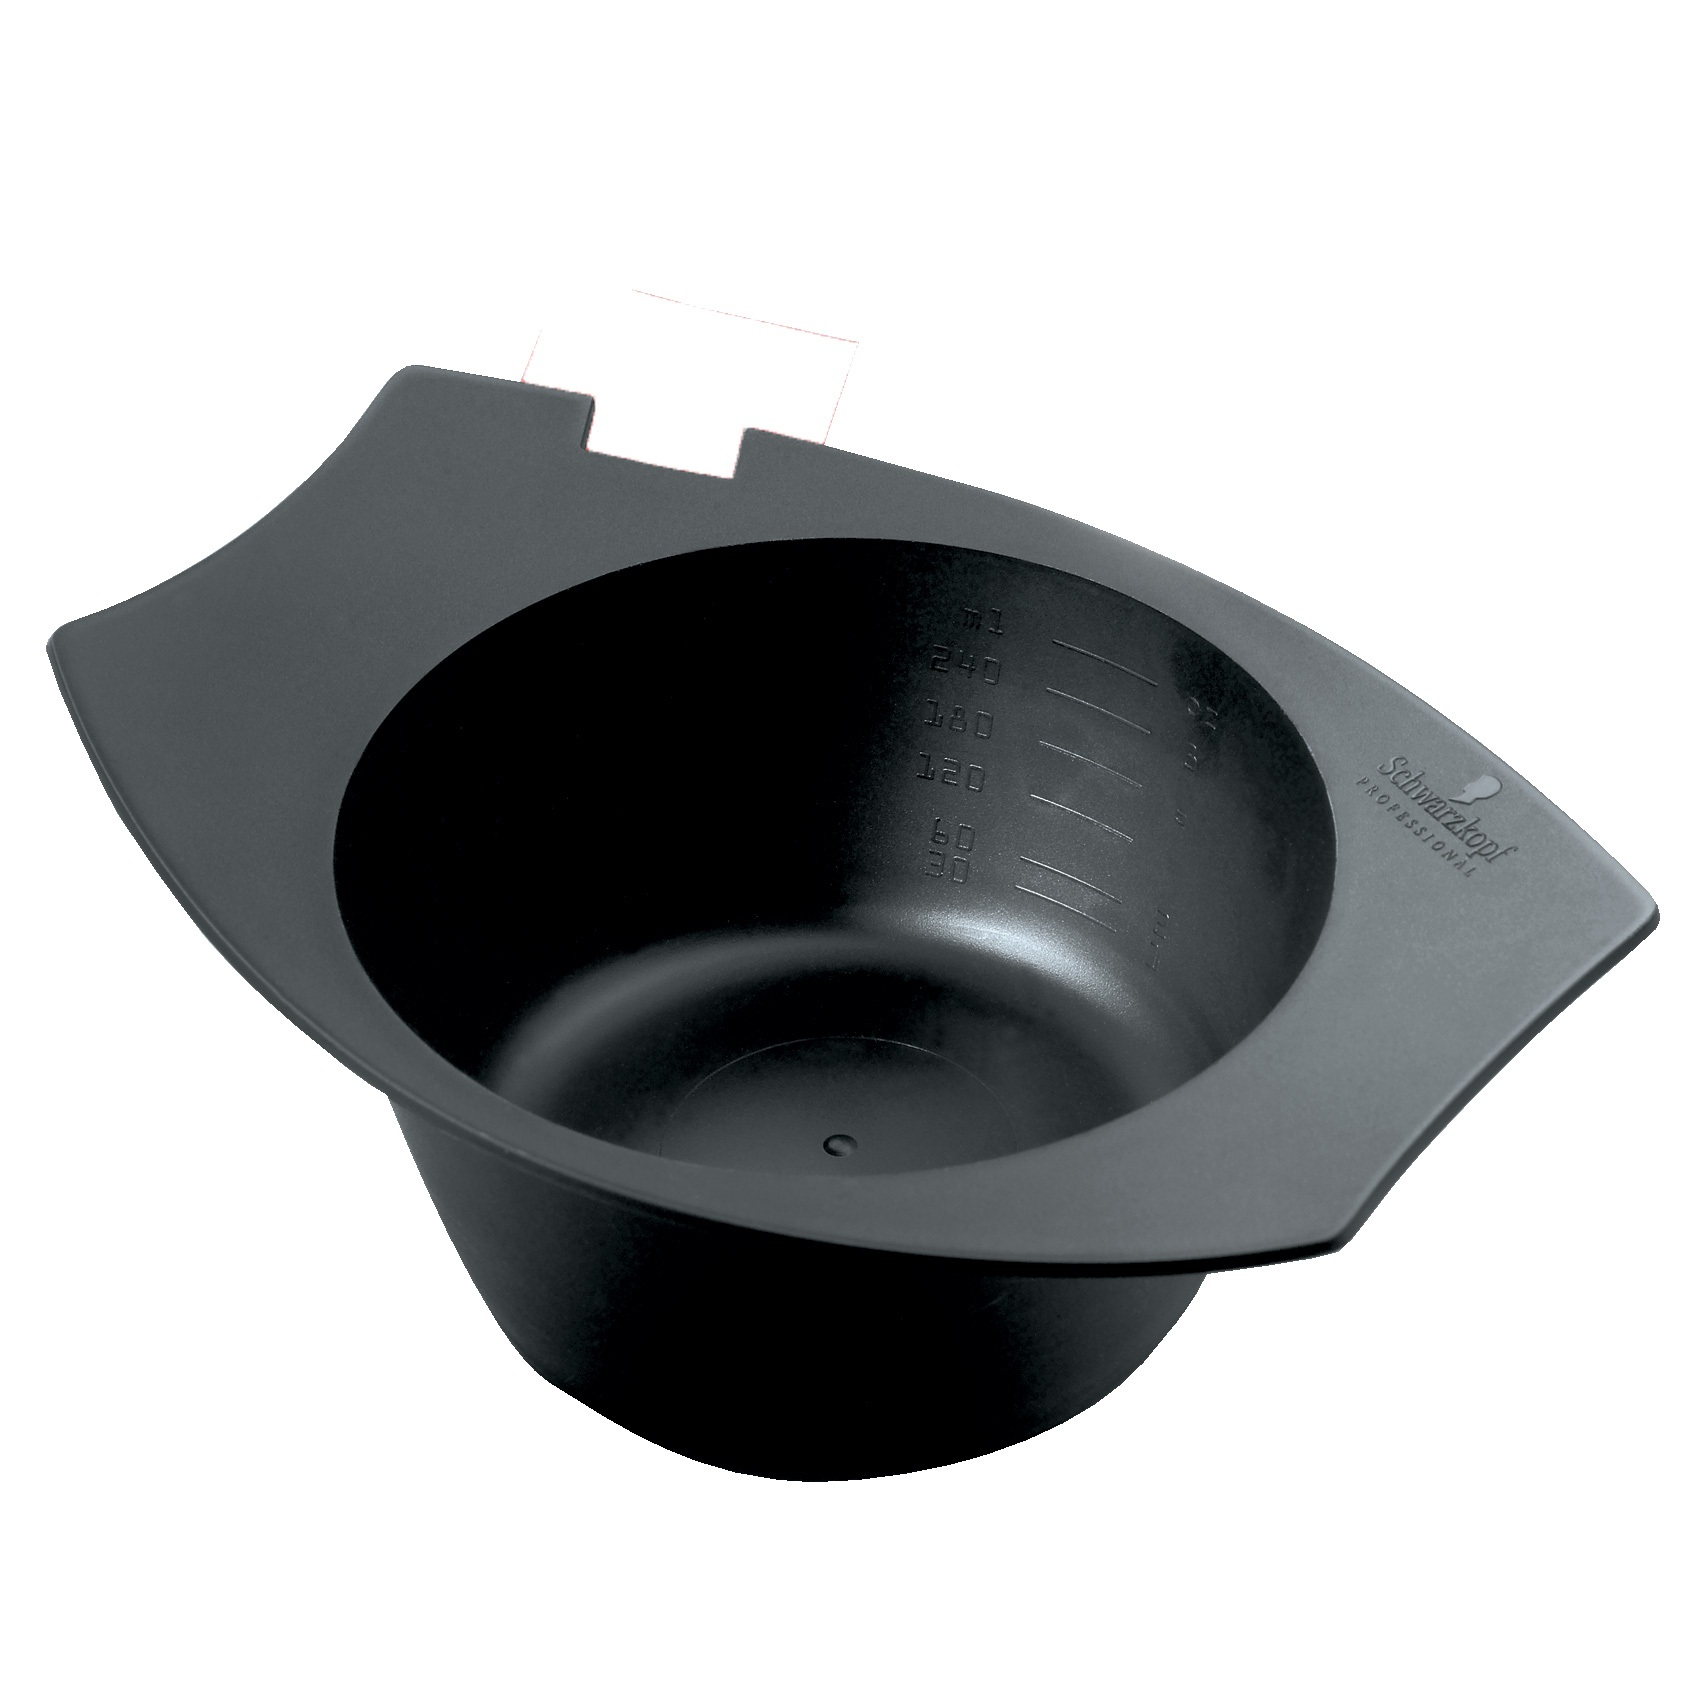 Schwarzkopf XTRAS: Color Mixing Bowl in Black